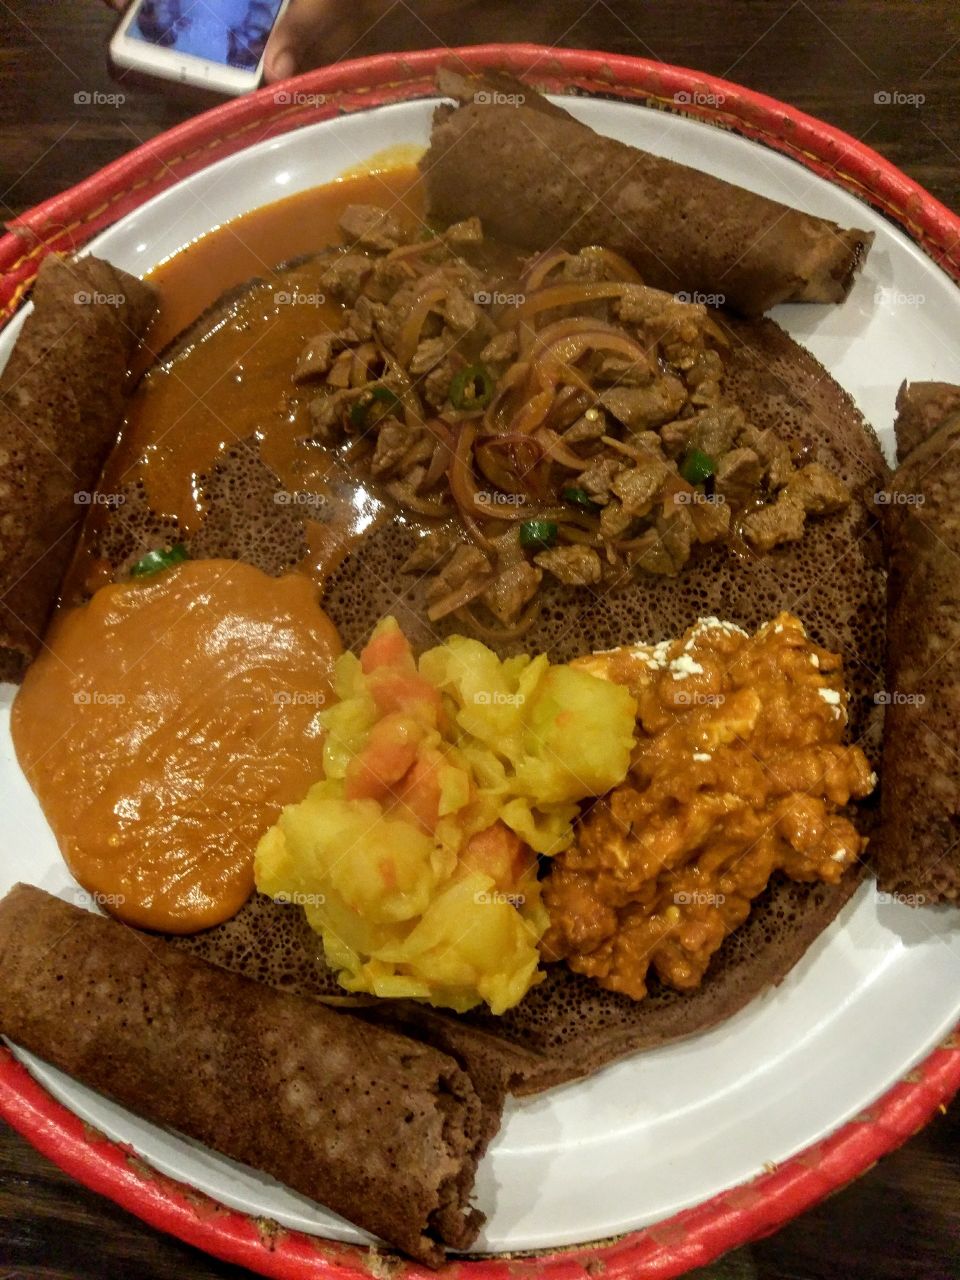 Traditional Ethiopian food